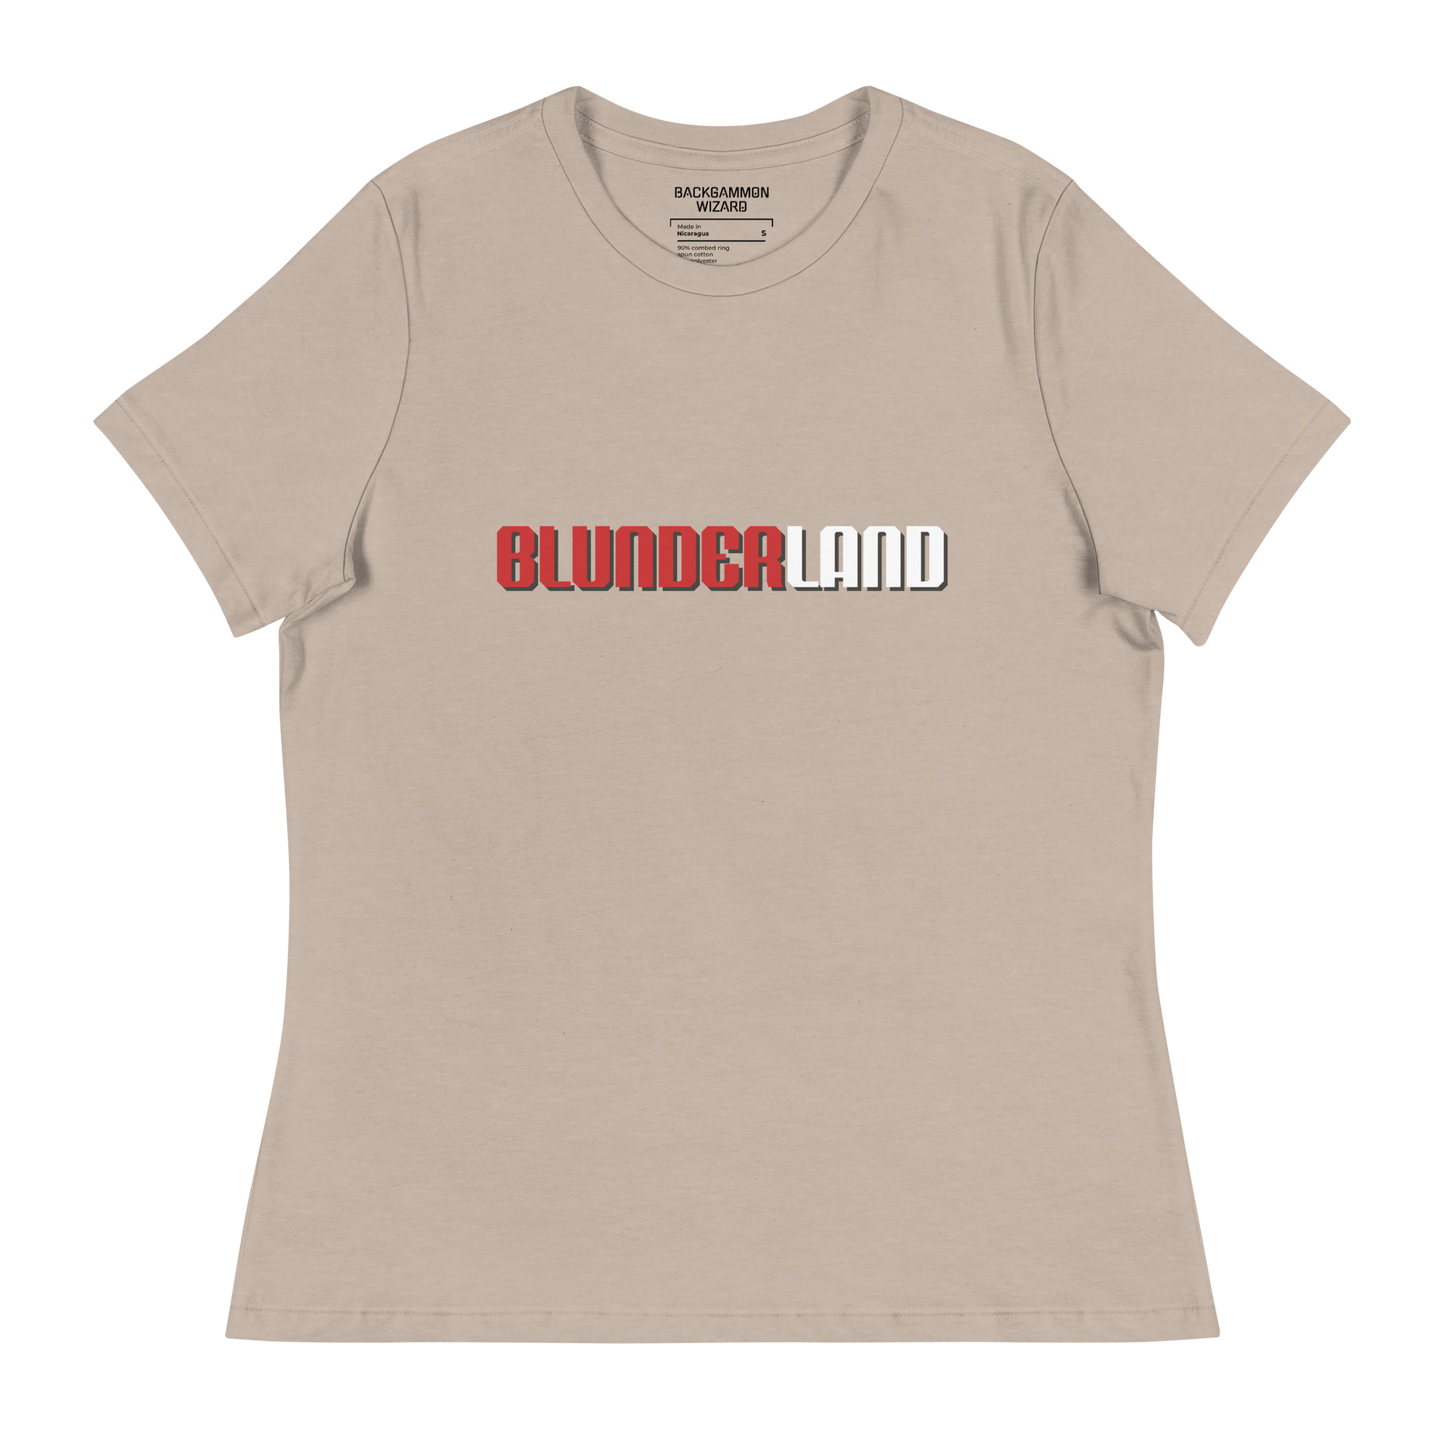 'BLUNDERLAND' Women's Shirt